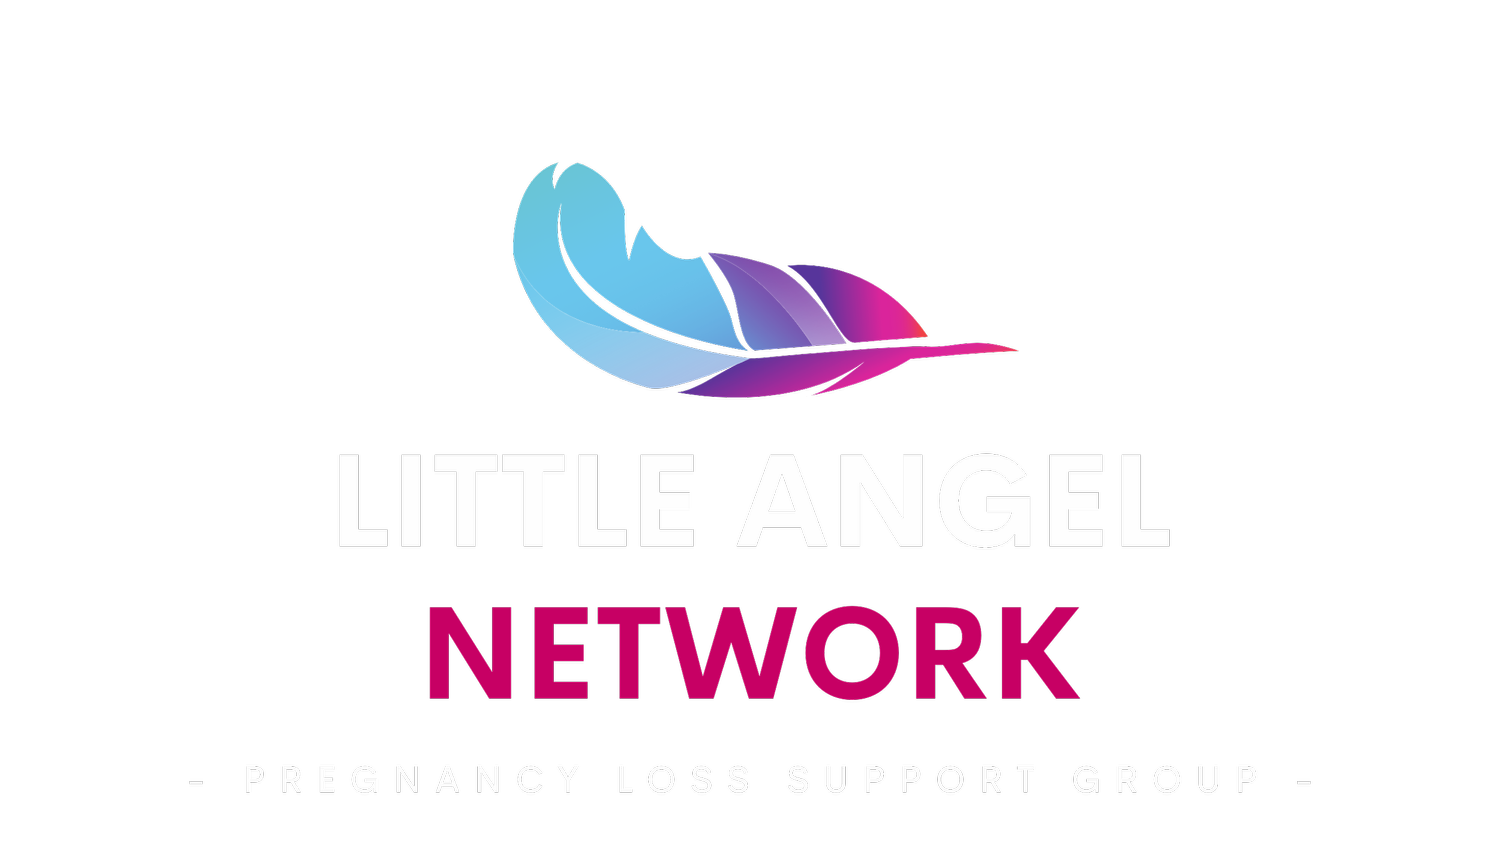 Little Angel Network